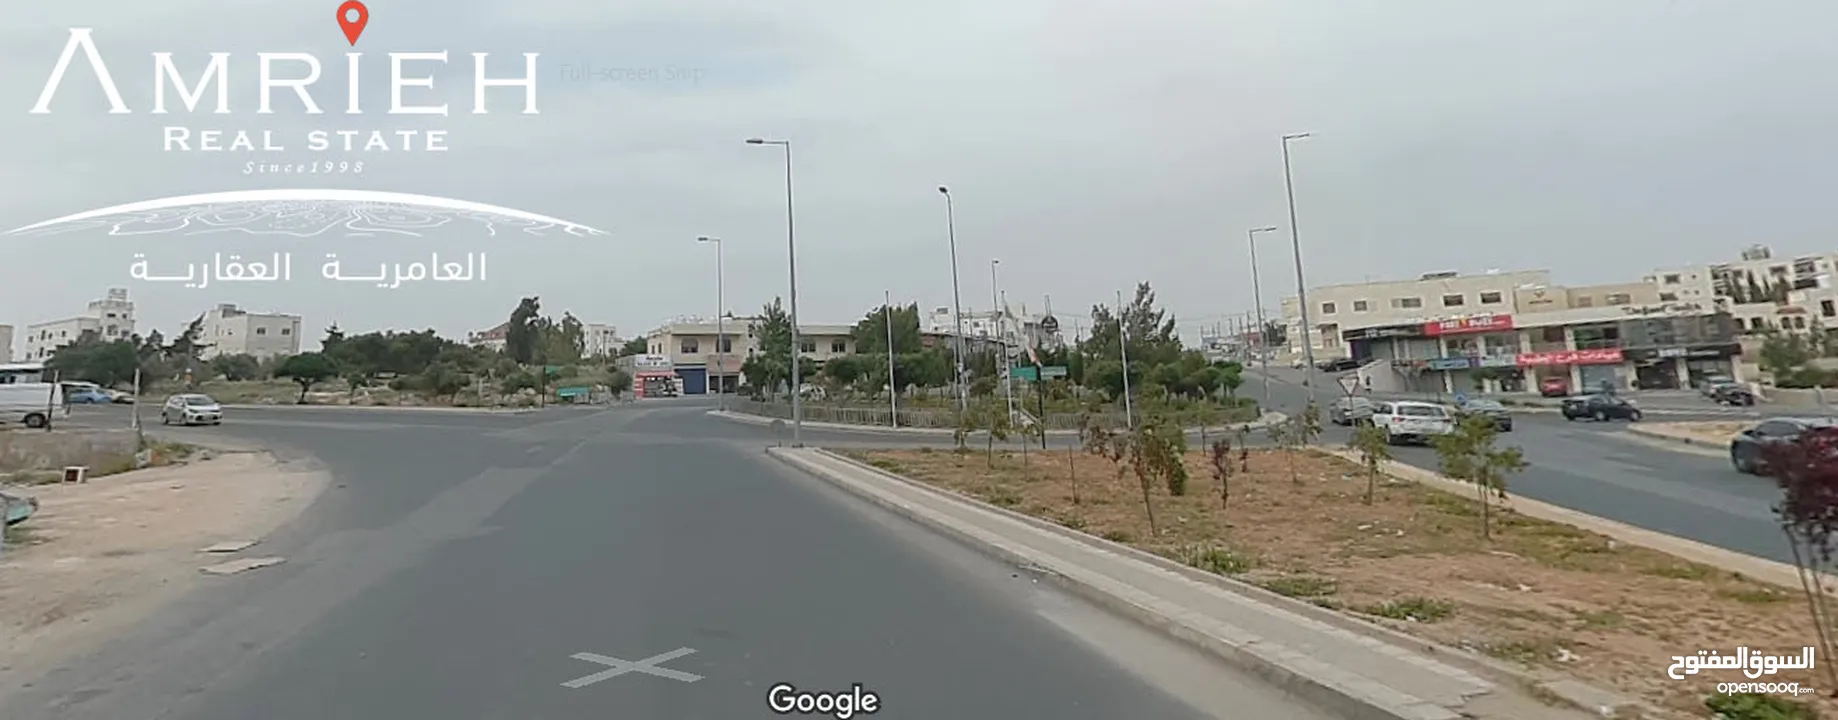 ارض سكنية للبيع في ابو نصير / قرب دوار البحرية على الشارع الرئيسي .